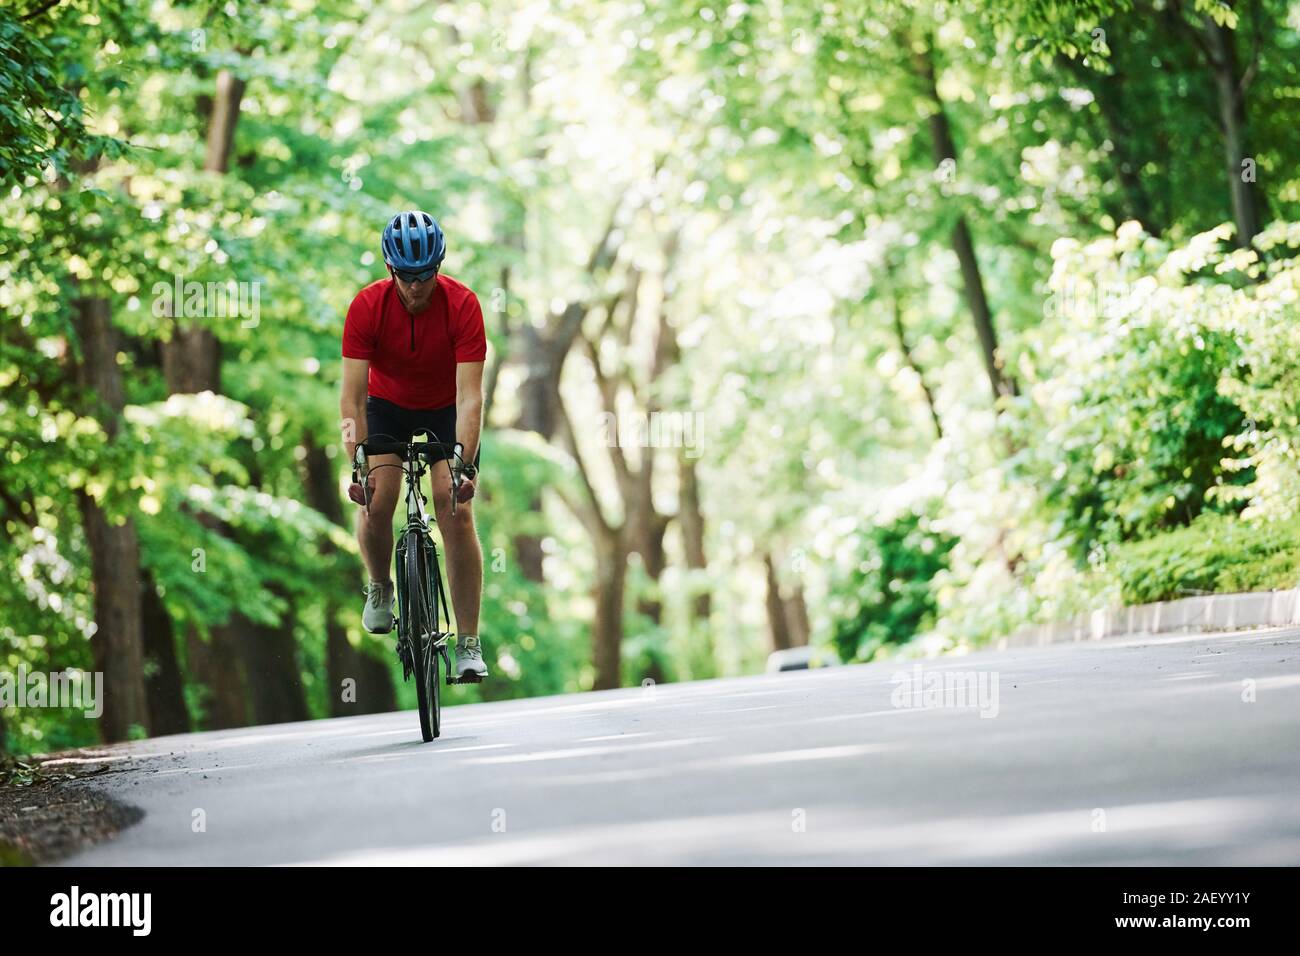 In leichter Kleidung. Radfahrer mit dem Rad auf der asphaltierten Straße im Wald an einem sonnigen Tag Stockfoto